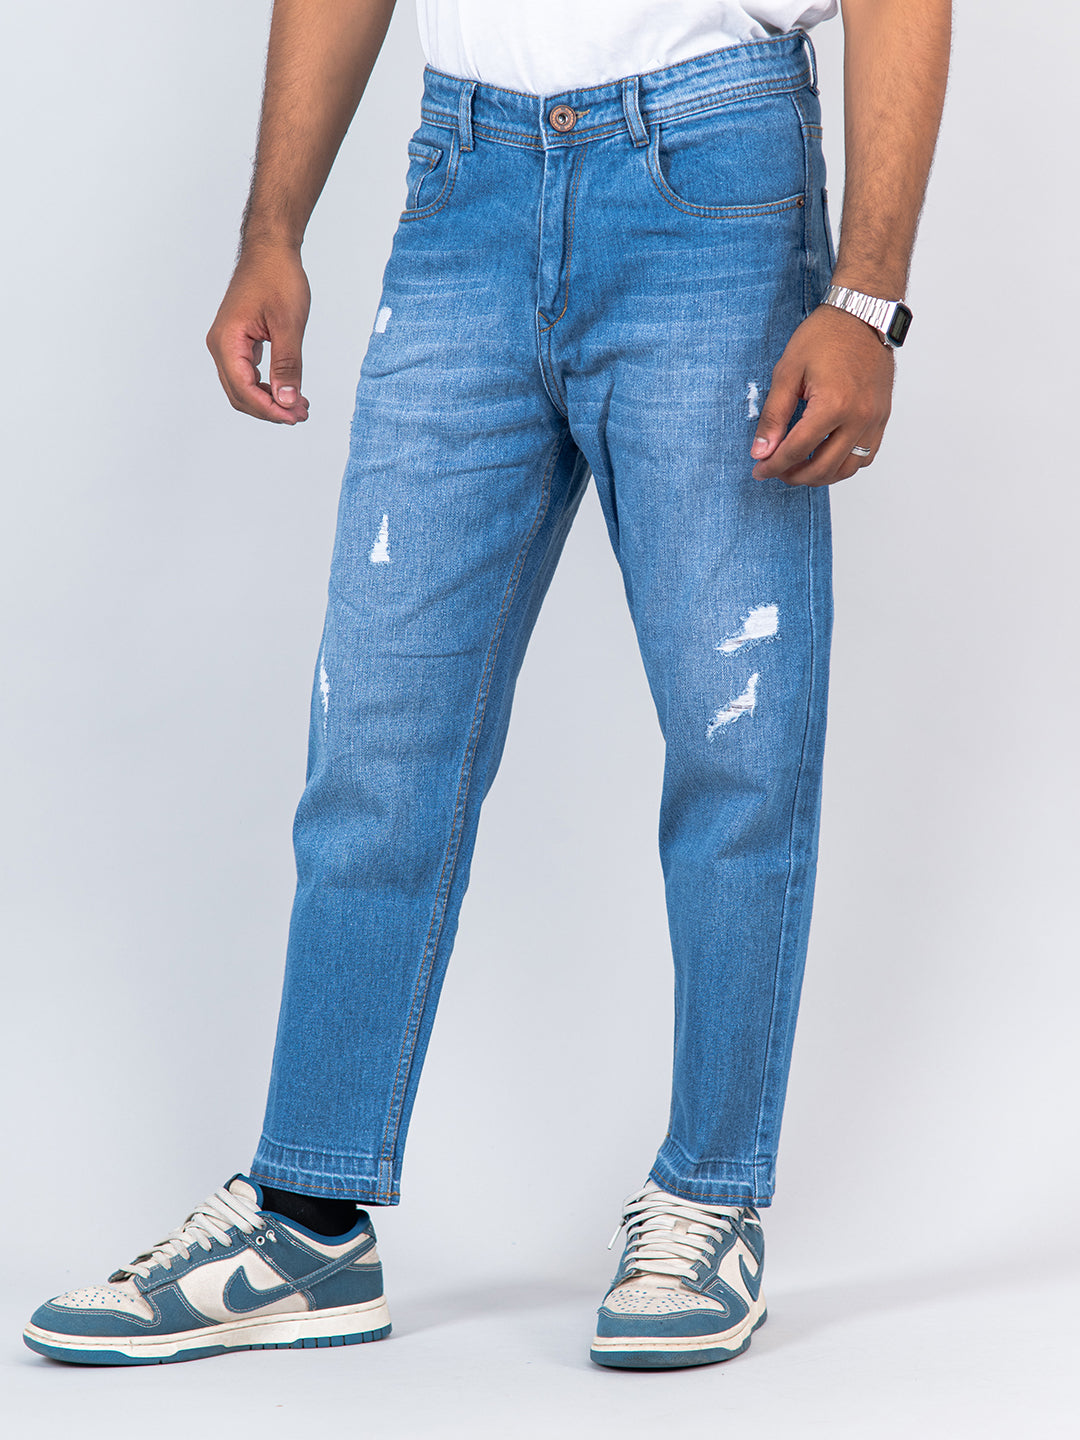 Jeans Camouflage Color Fashion Mens Jeans Ankle Length Jogger Pants Punk  Style Hip Hop Jeans Homme Military Large Pocket Cargo Pants Men :  Amazon.nl: Fashion